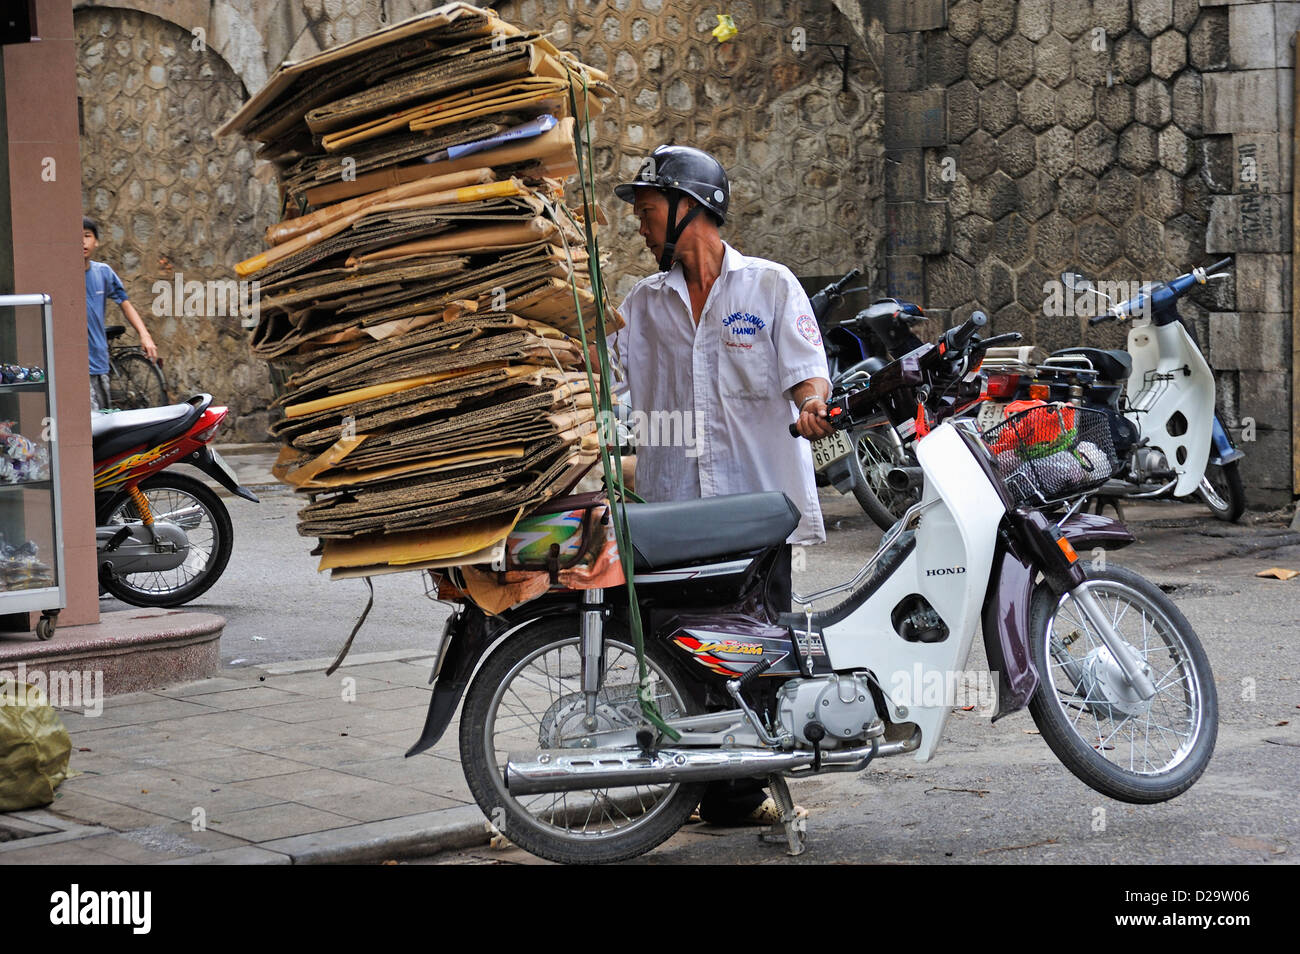 Mann mit Pappe auf der Rückseite von seinem Roller, Hanoi, Vietnam Stockfoto